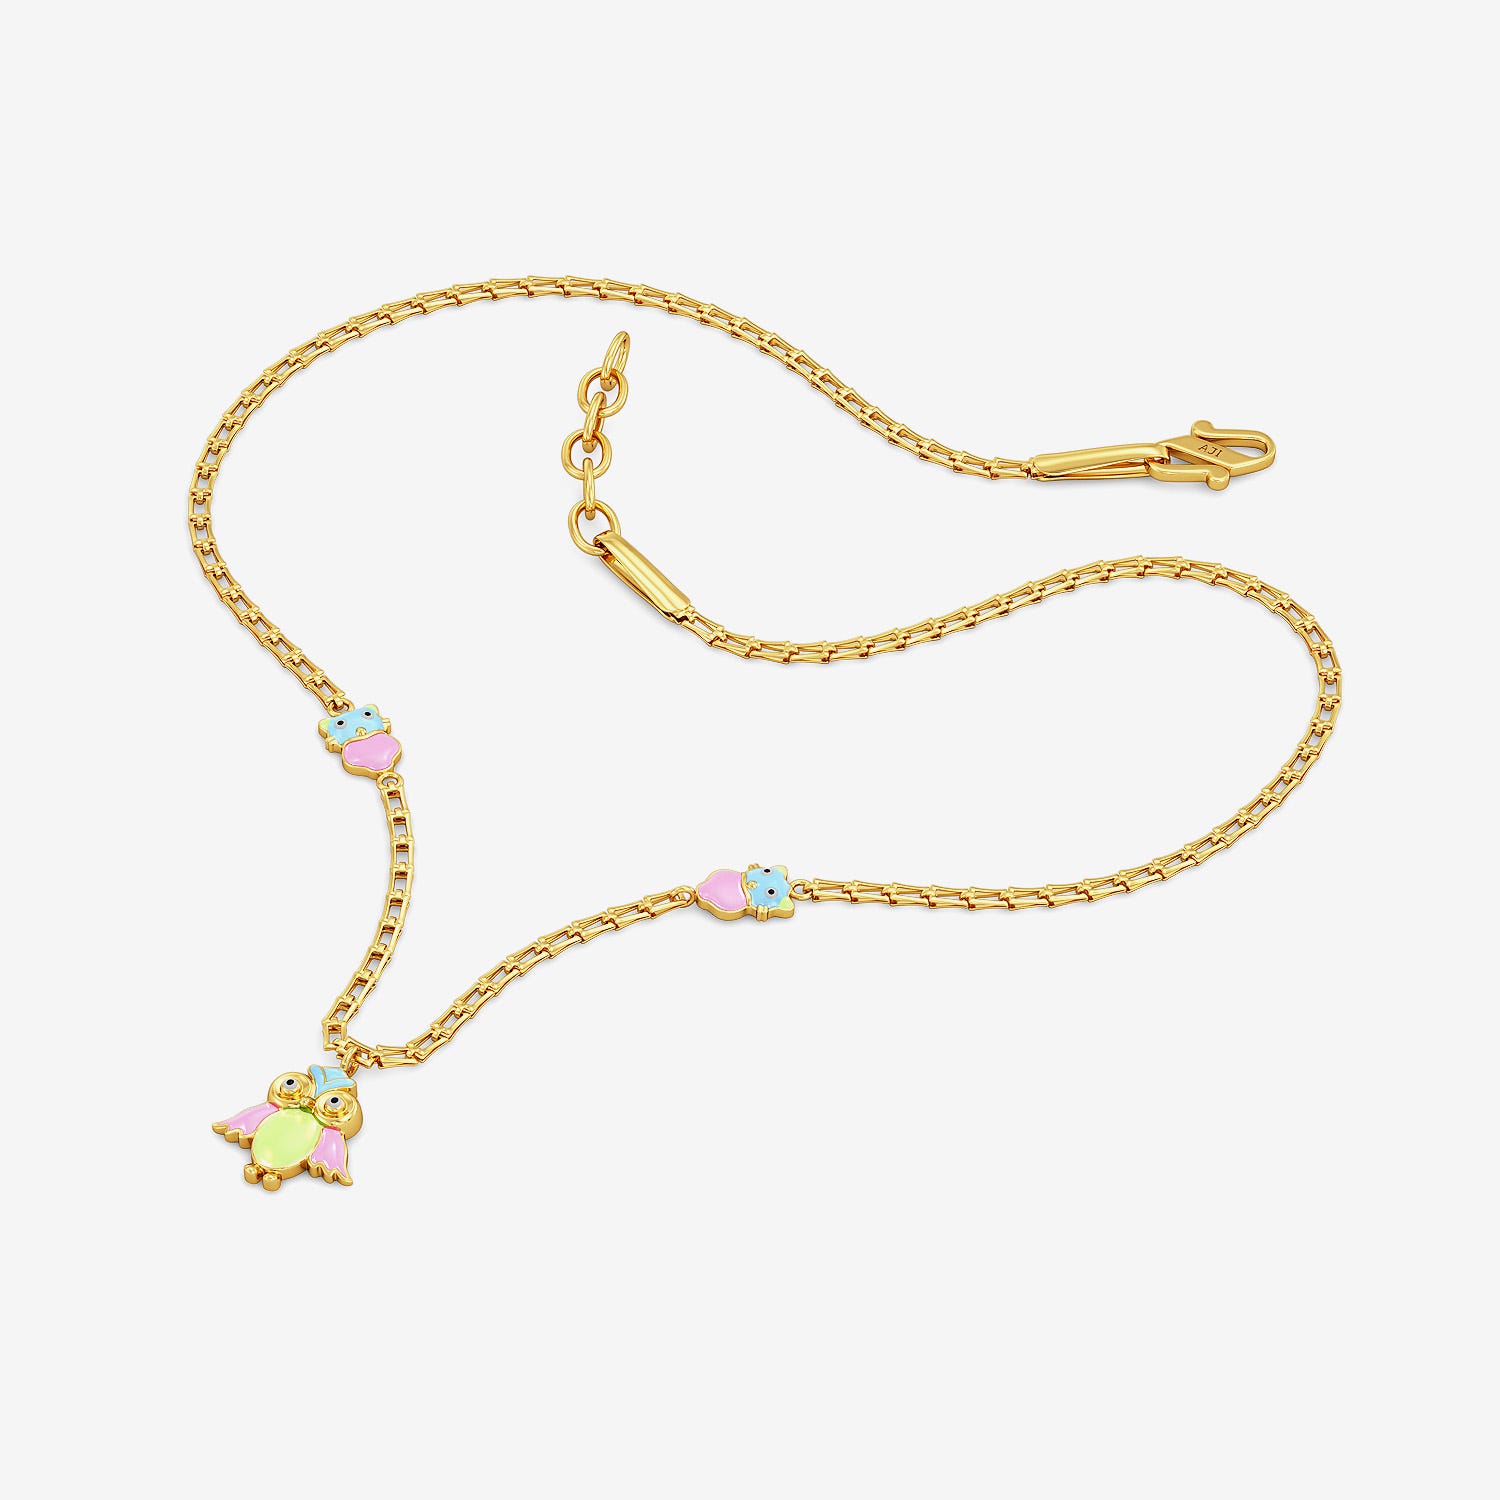 Buy Cress Floret Kids' Gold Necklace Online | CaratLane